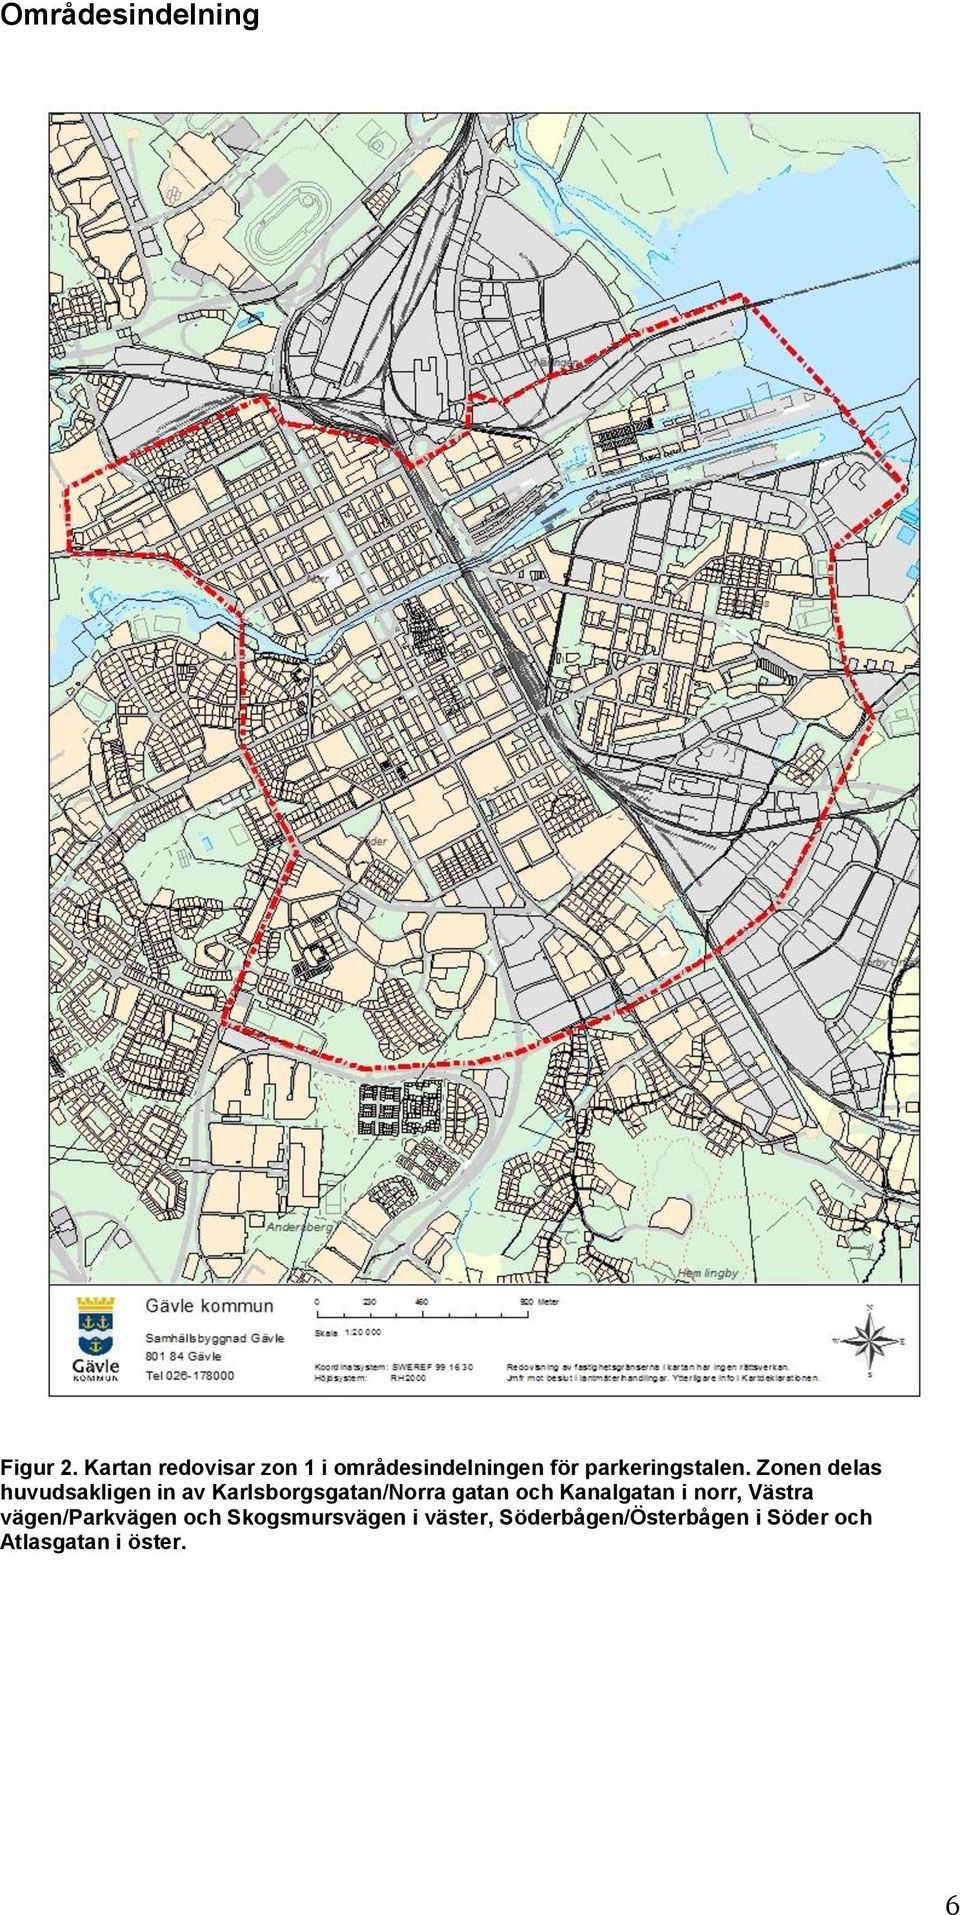 Zonen delas huvudsakligen in av Karlsborgsgatan/Norra gatan och